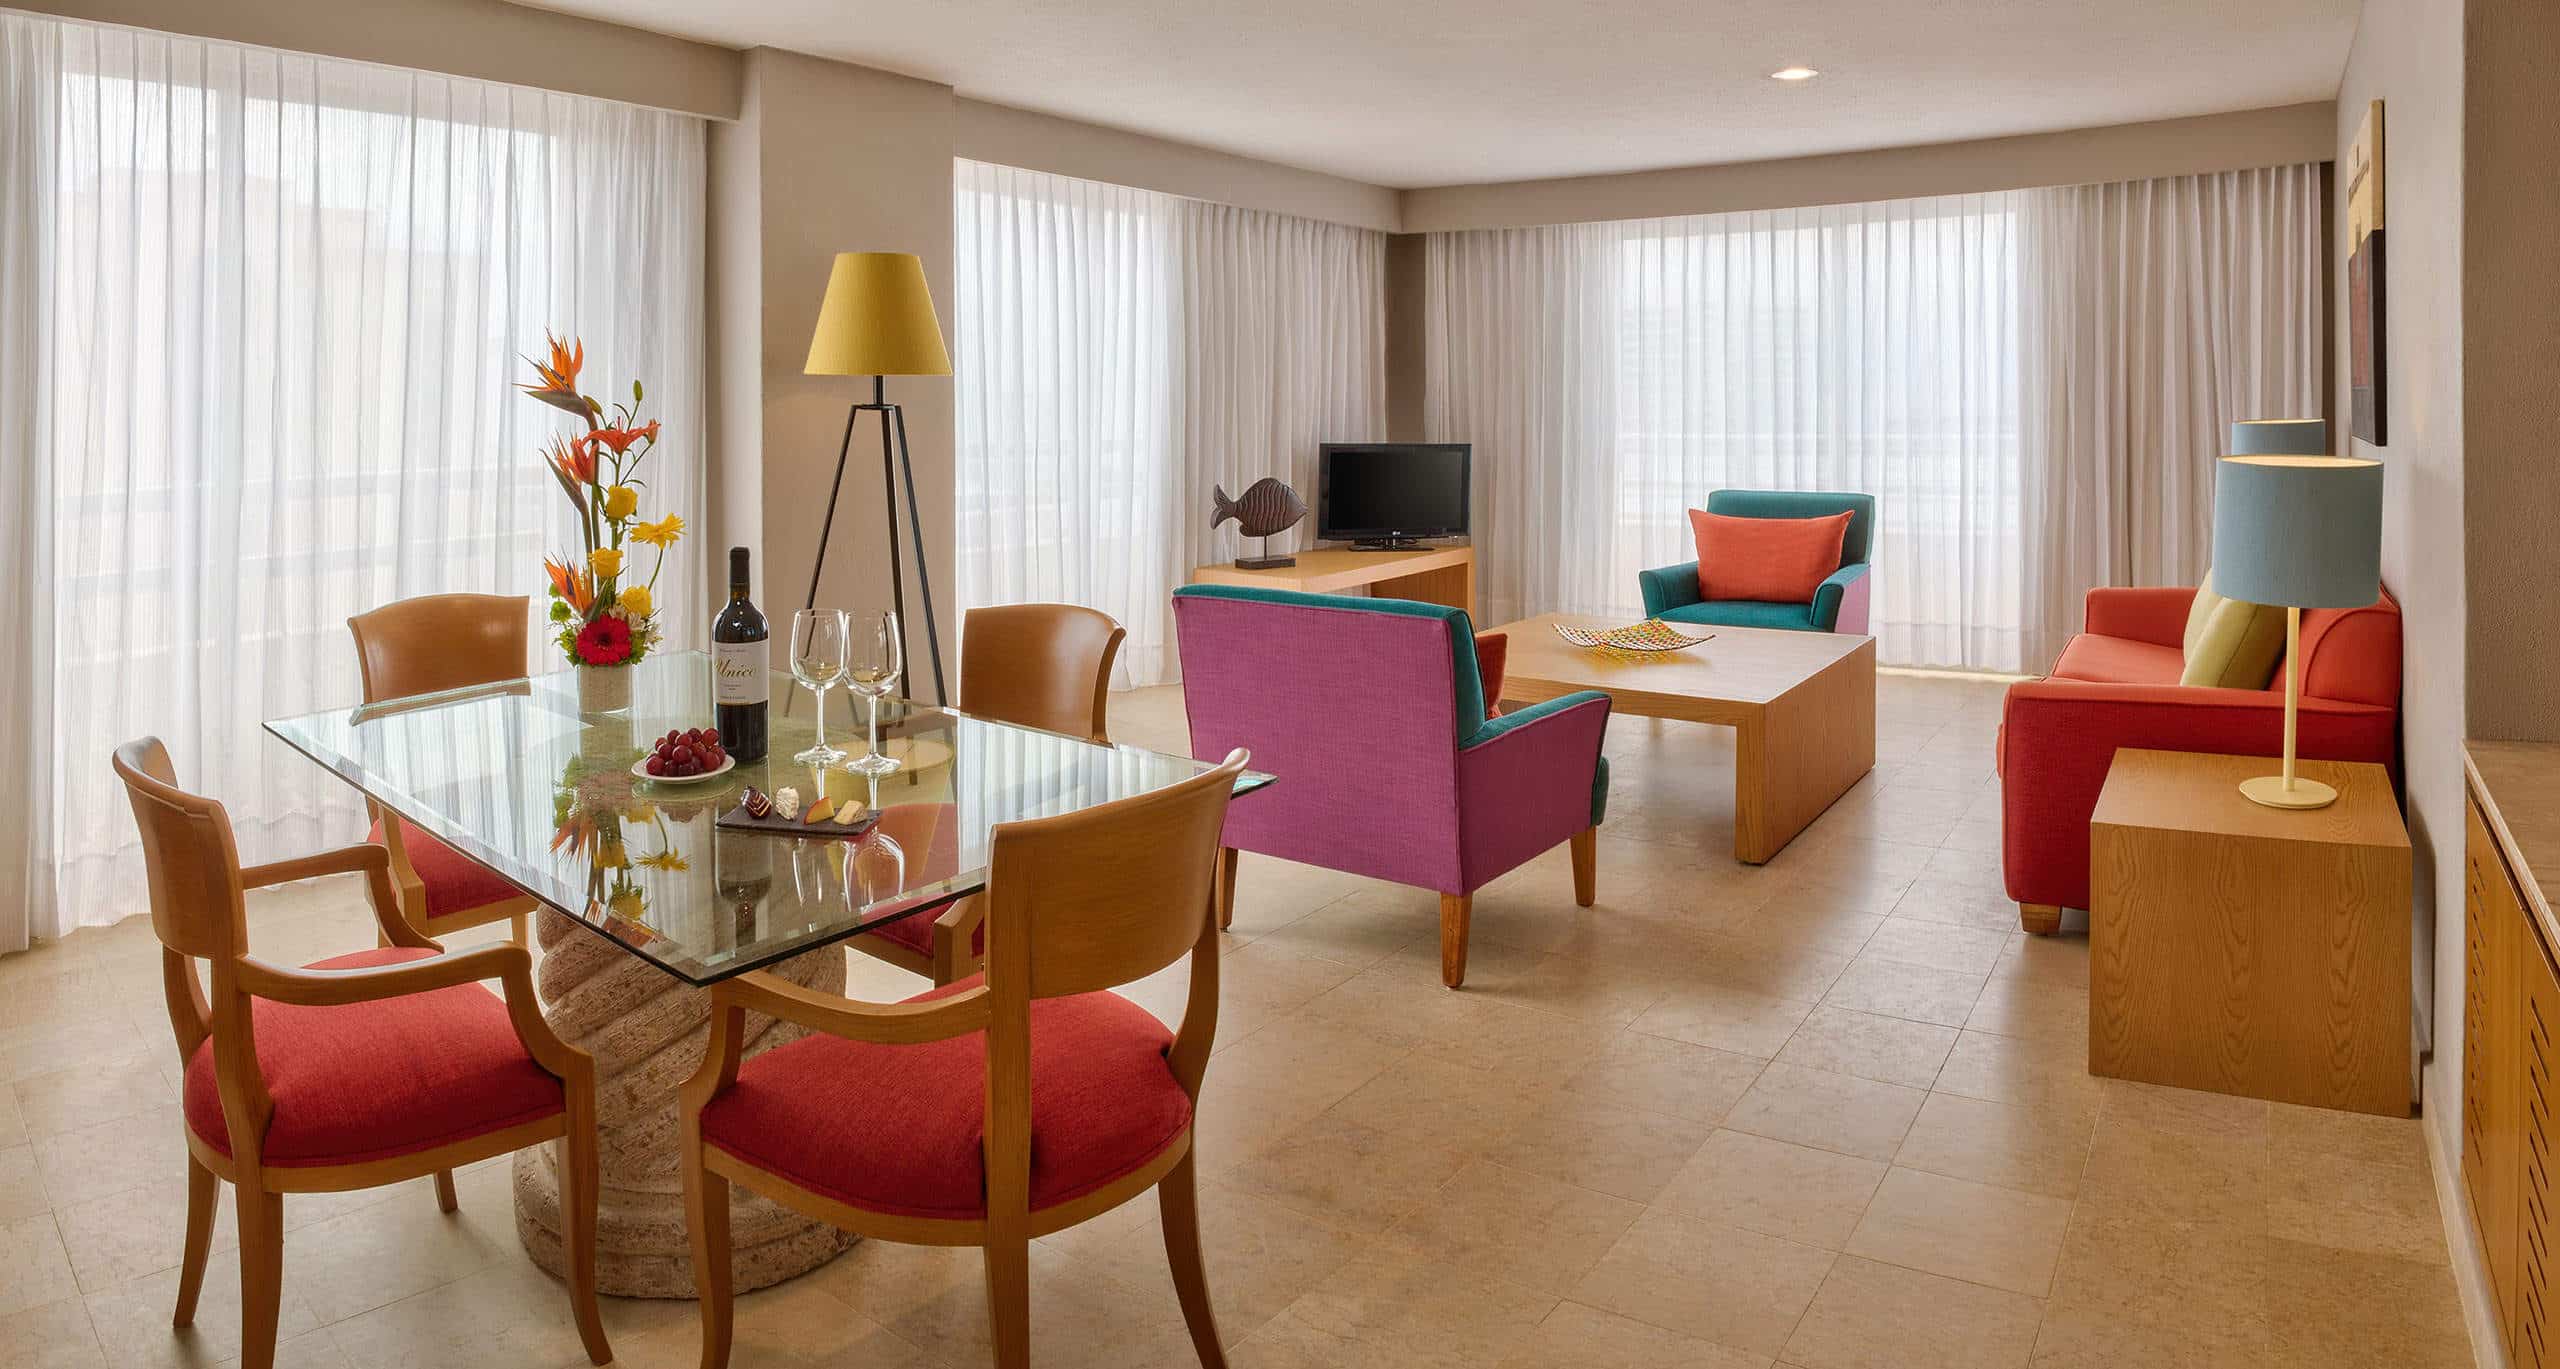 Master suite from Galeria Plaza Veracruz hotel